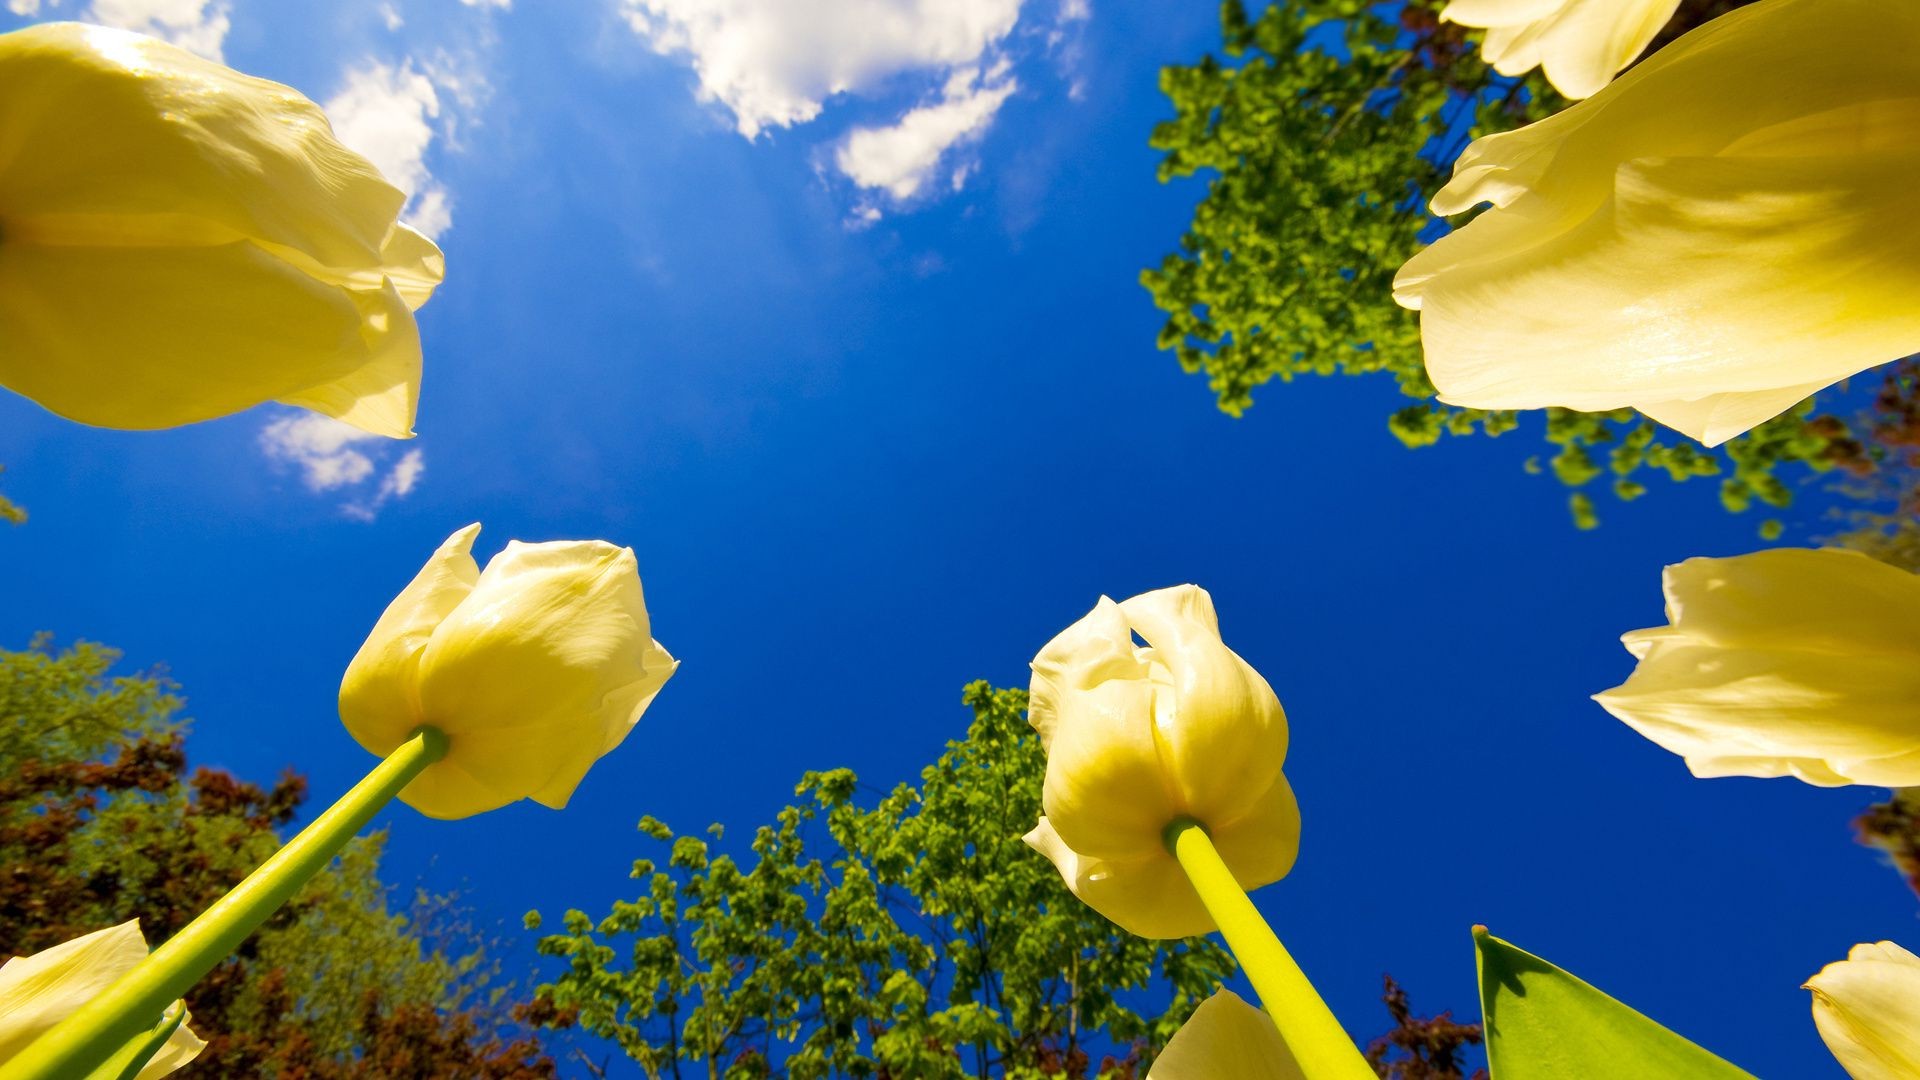 природа цветы желтые тюльпаны поле nature flowers yellow tulips field бесплатно